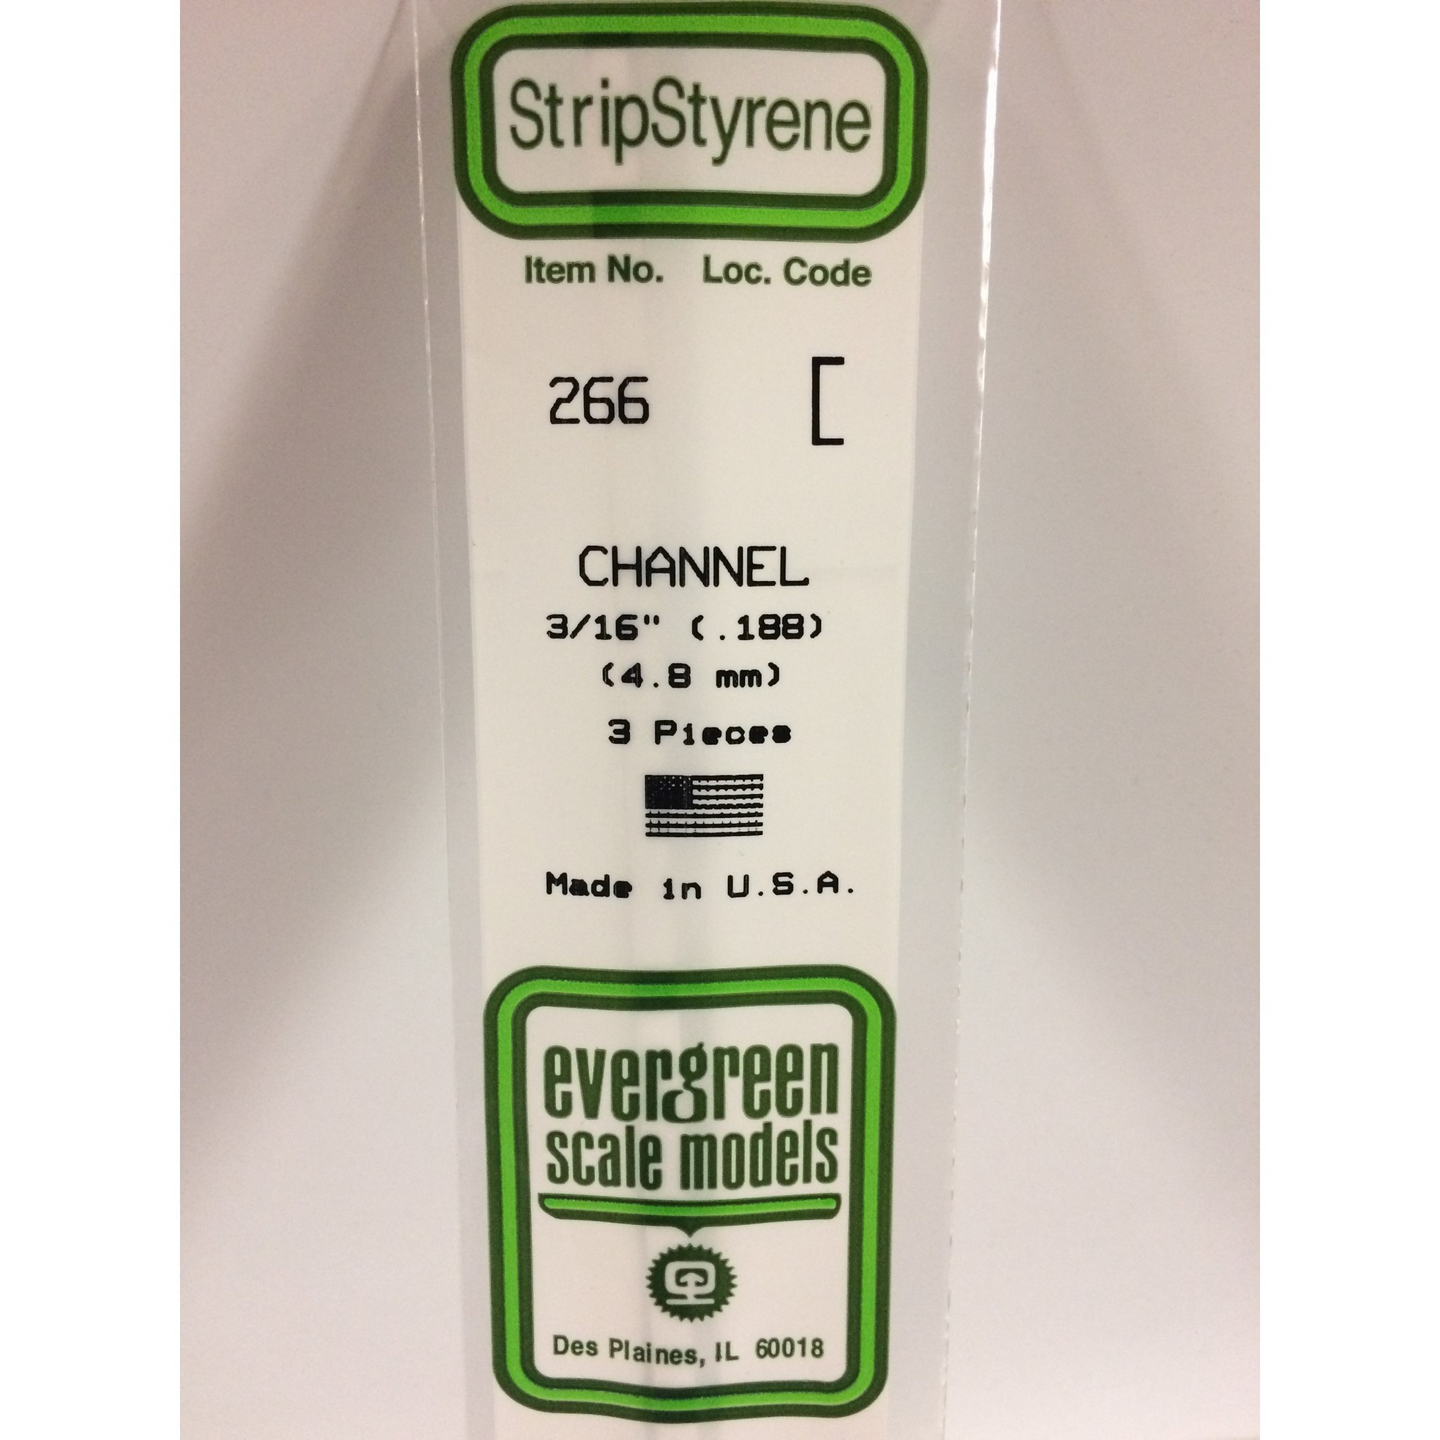 Evergreen 266 Styrene Plastic Channel 0.188